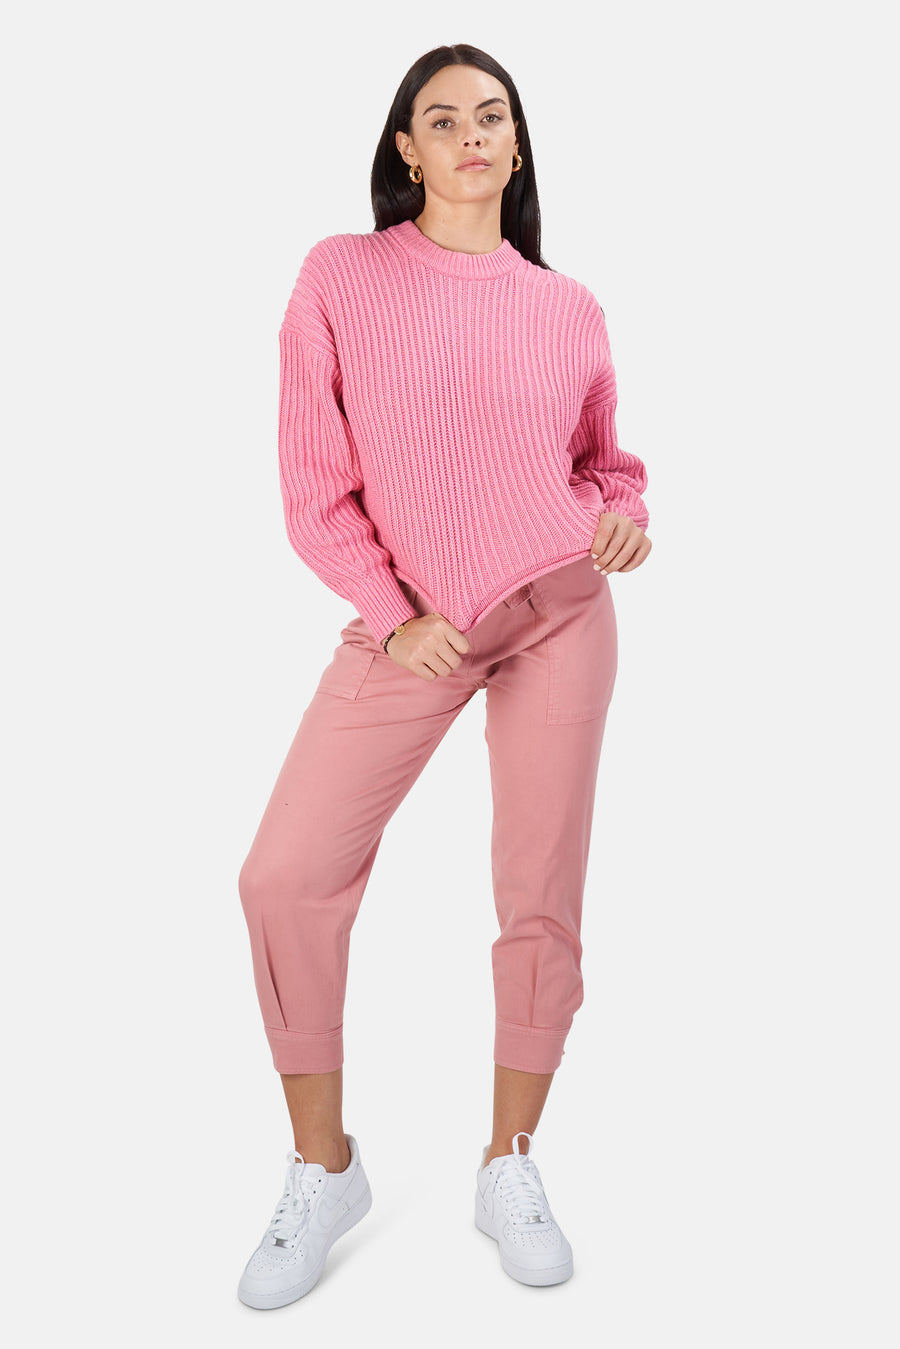 Lianne Sweater Pink Lady - blueandcream